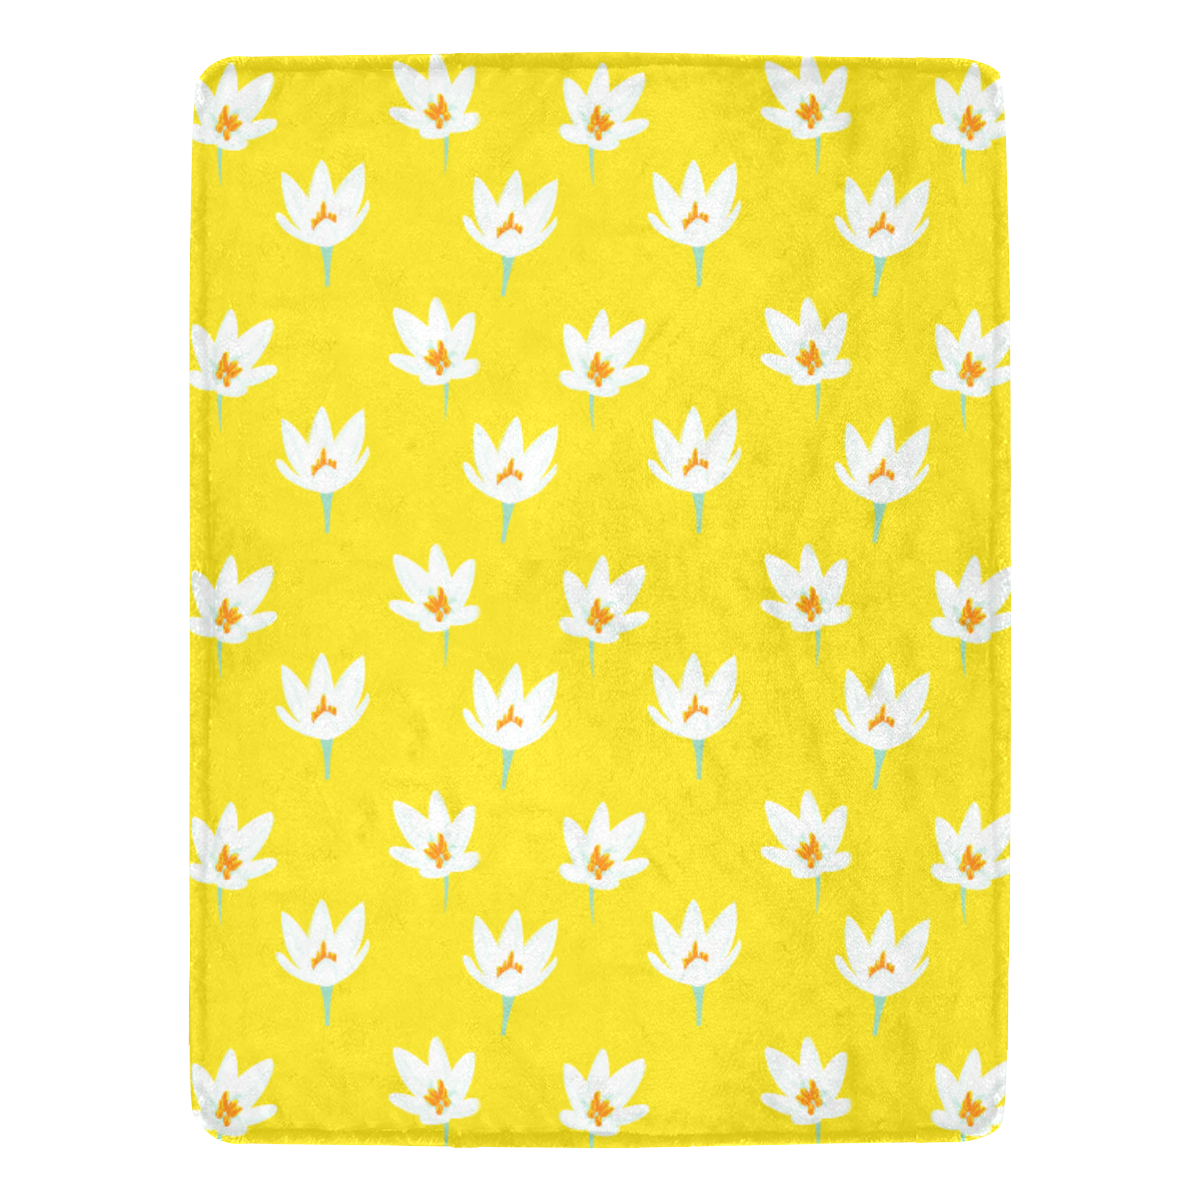 RL yellow Ultra-Soft Micro Fleece Blanket 60"x80"